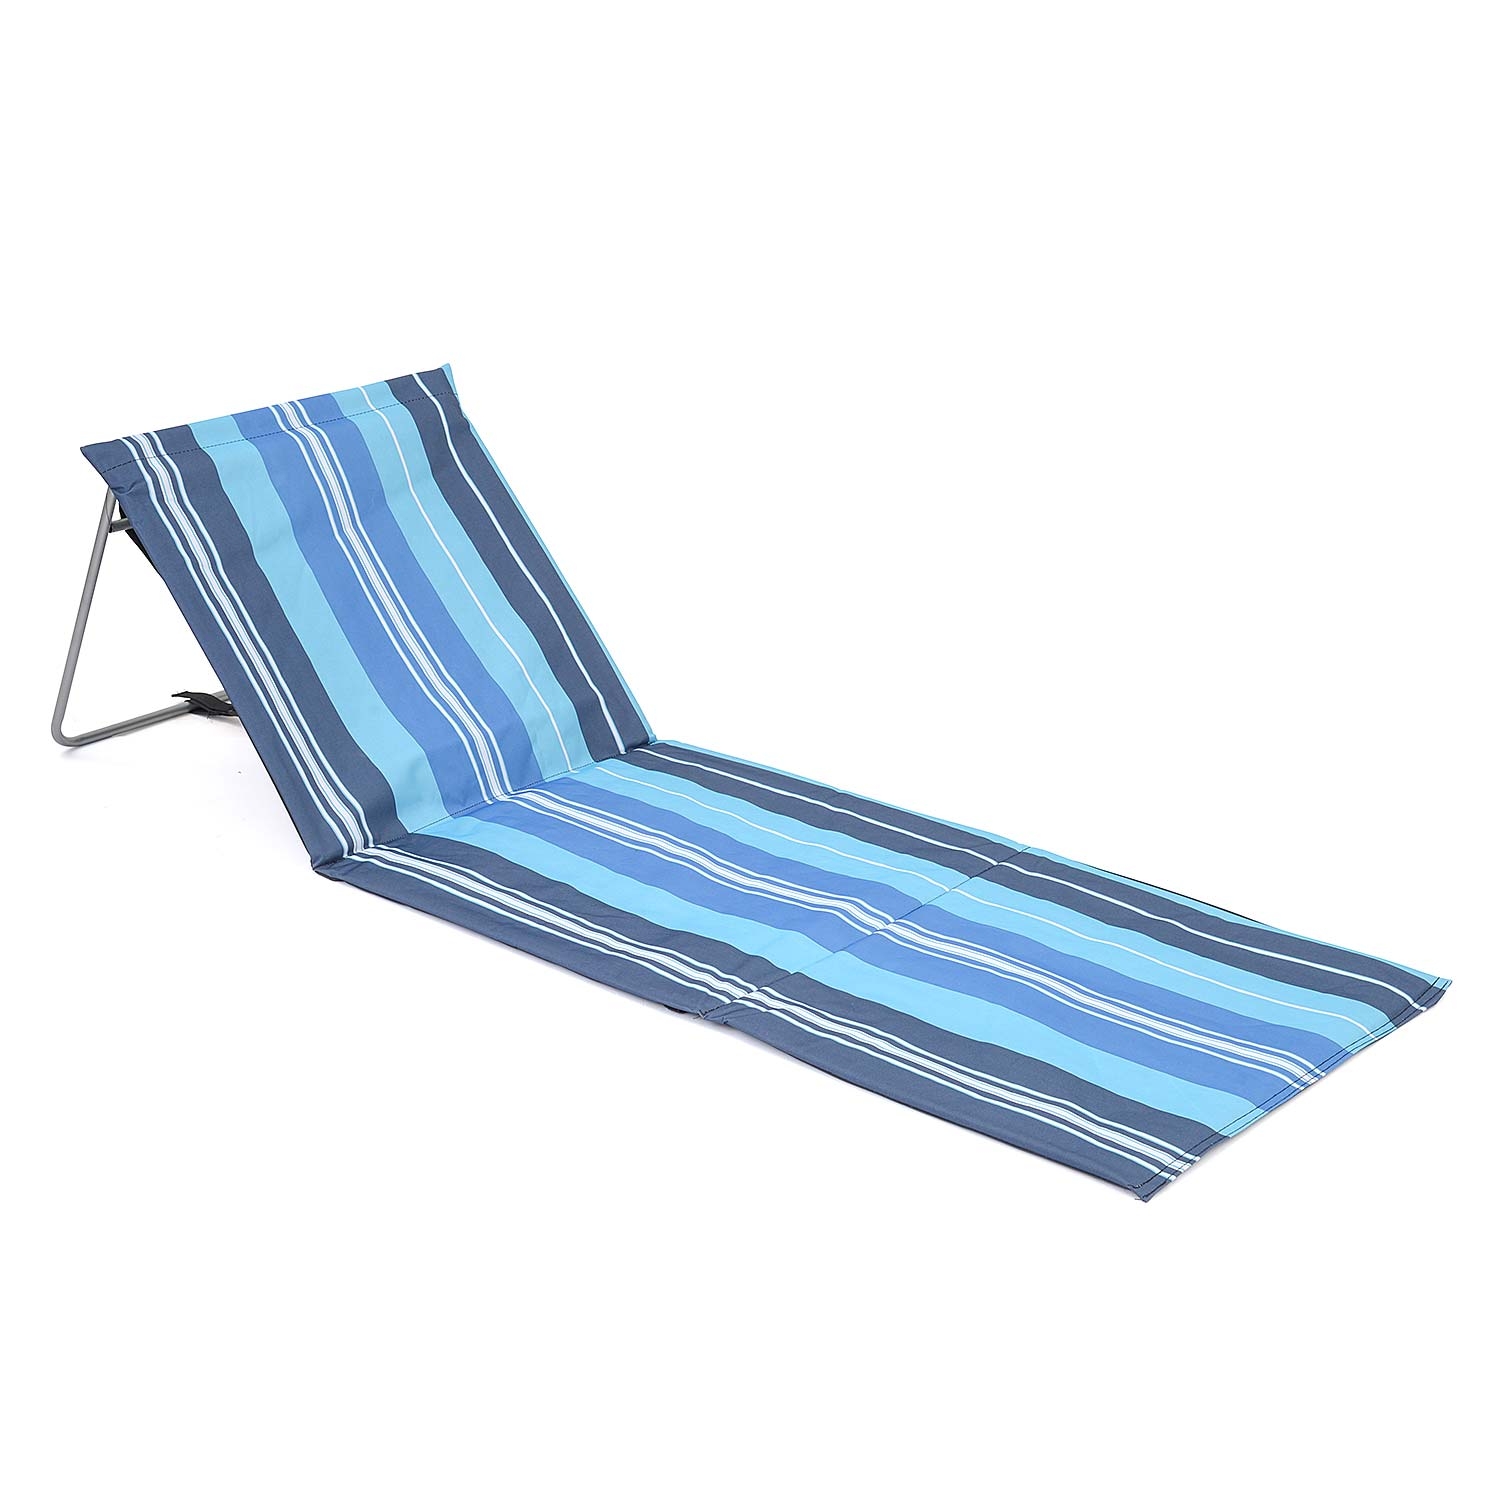 Folding Sun Lounger Beach Mat With Backrest - Blue